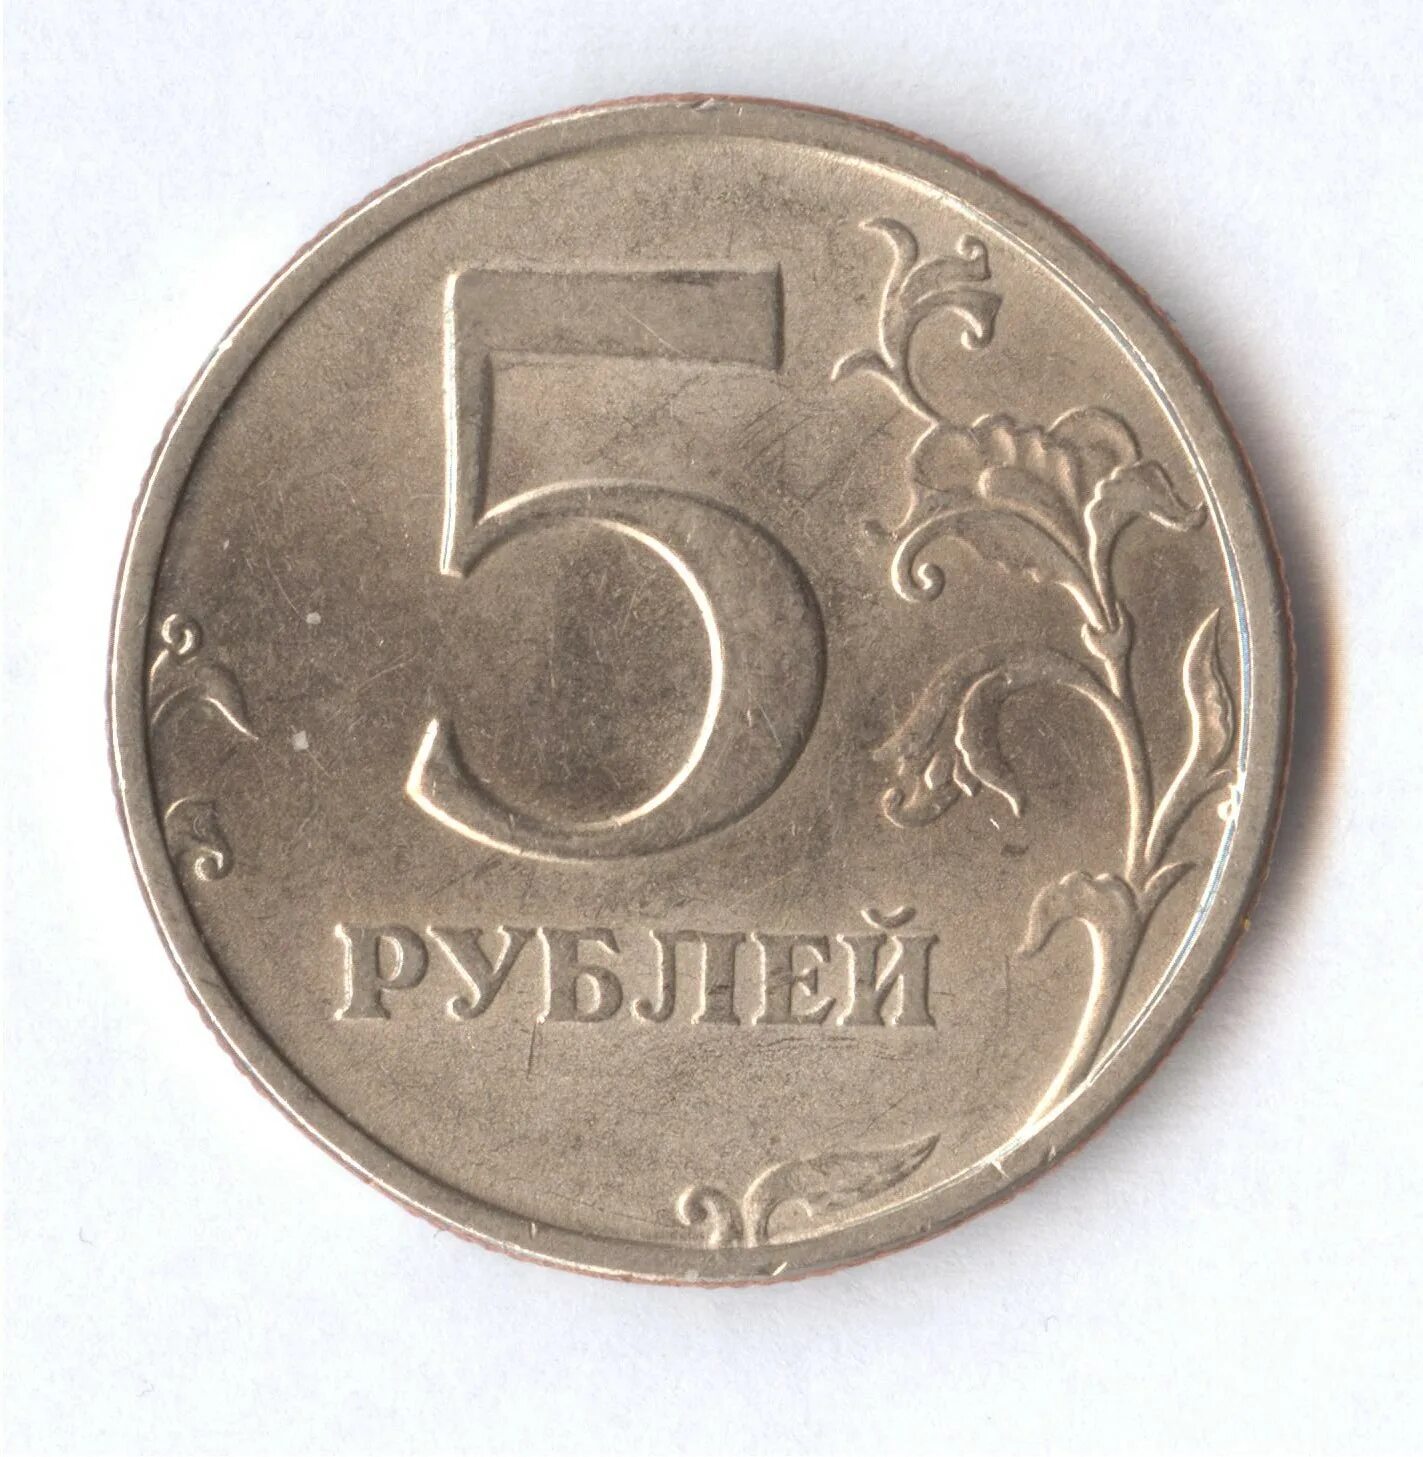 5 рублей стороны. 5 Рублей 1998 СПМД. Дорогие монеты 5 рублей 1998. Монеты СПМД 1998 год 5 рублей. Нумизматика 5 рублей 1998.